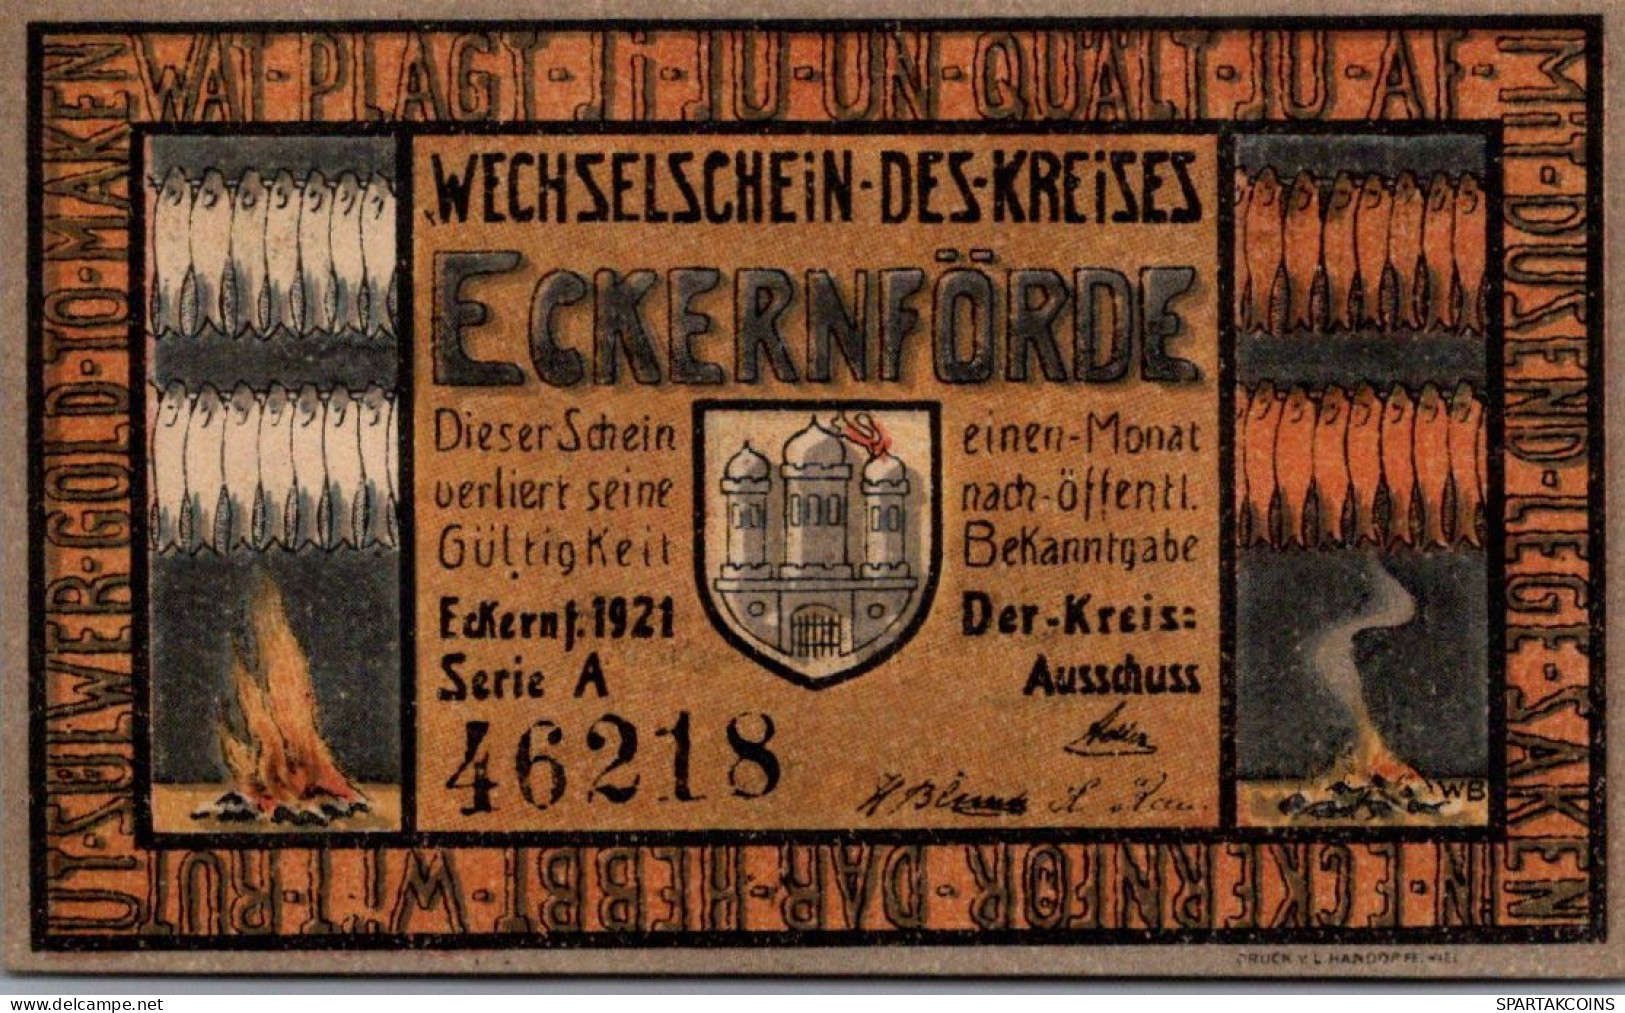 50 PFENNIG 1921 Stadt ECKERNFoRDE Schleswig-Holstein UNC DEUTSCHLAND #PA512 - [11] Lokale Uitgaven